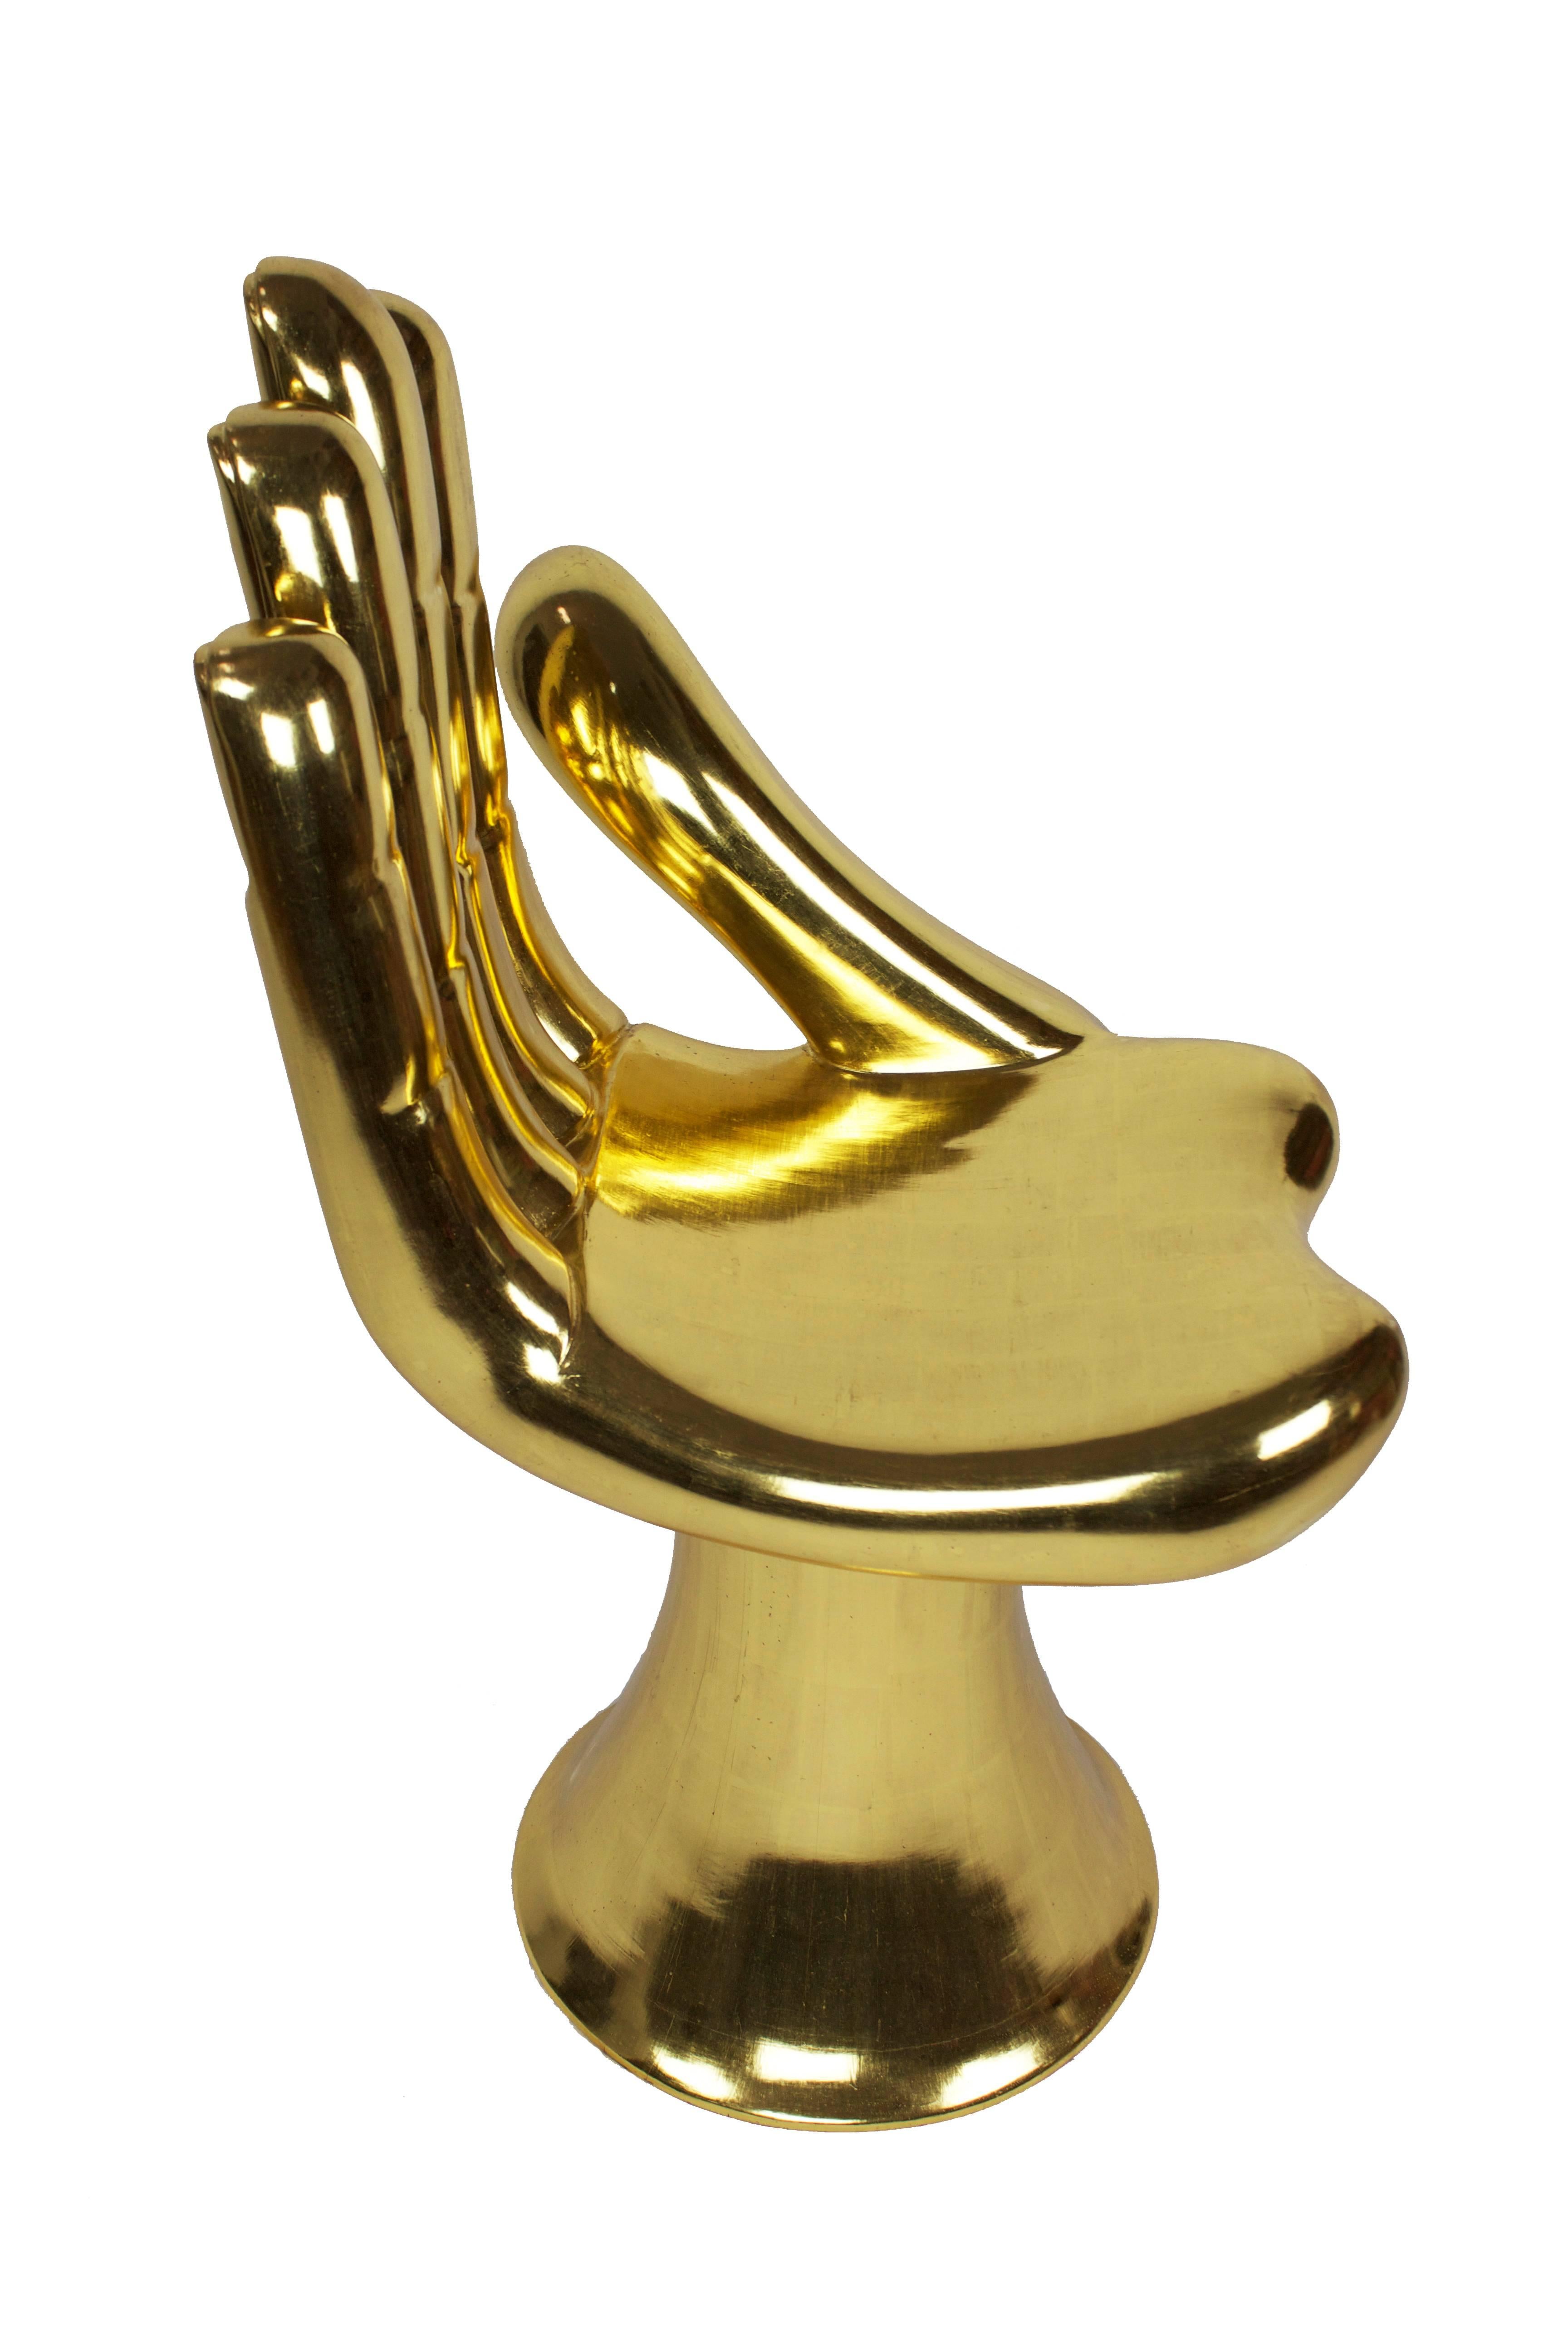 Pedro Friedeberg 
Gold Hand Chair.
Blattgold über Holz.
Signiert im Inneren des Sockels.
Enthält ein vom Künstler unterzeichnetes Echtheitszertifikat.

Erhältlich als Teil eines passenden Sets.